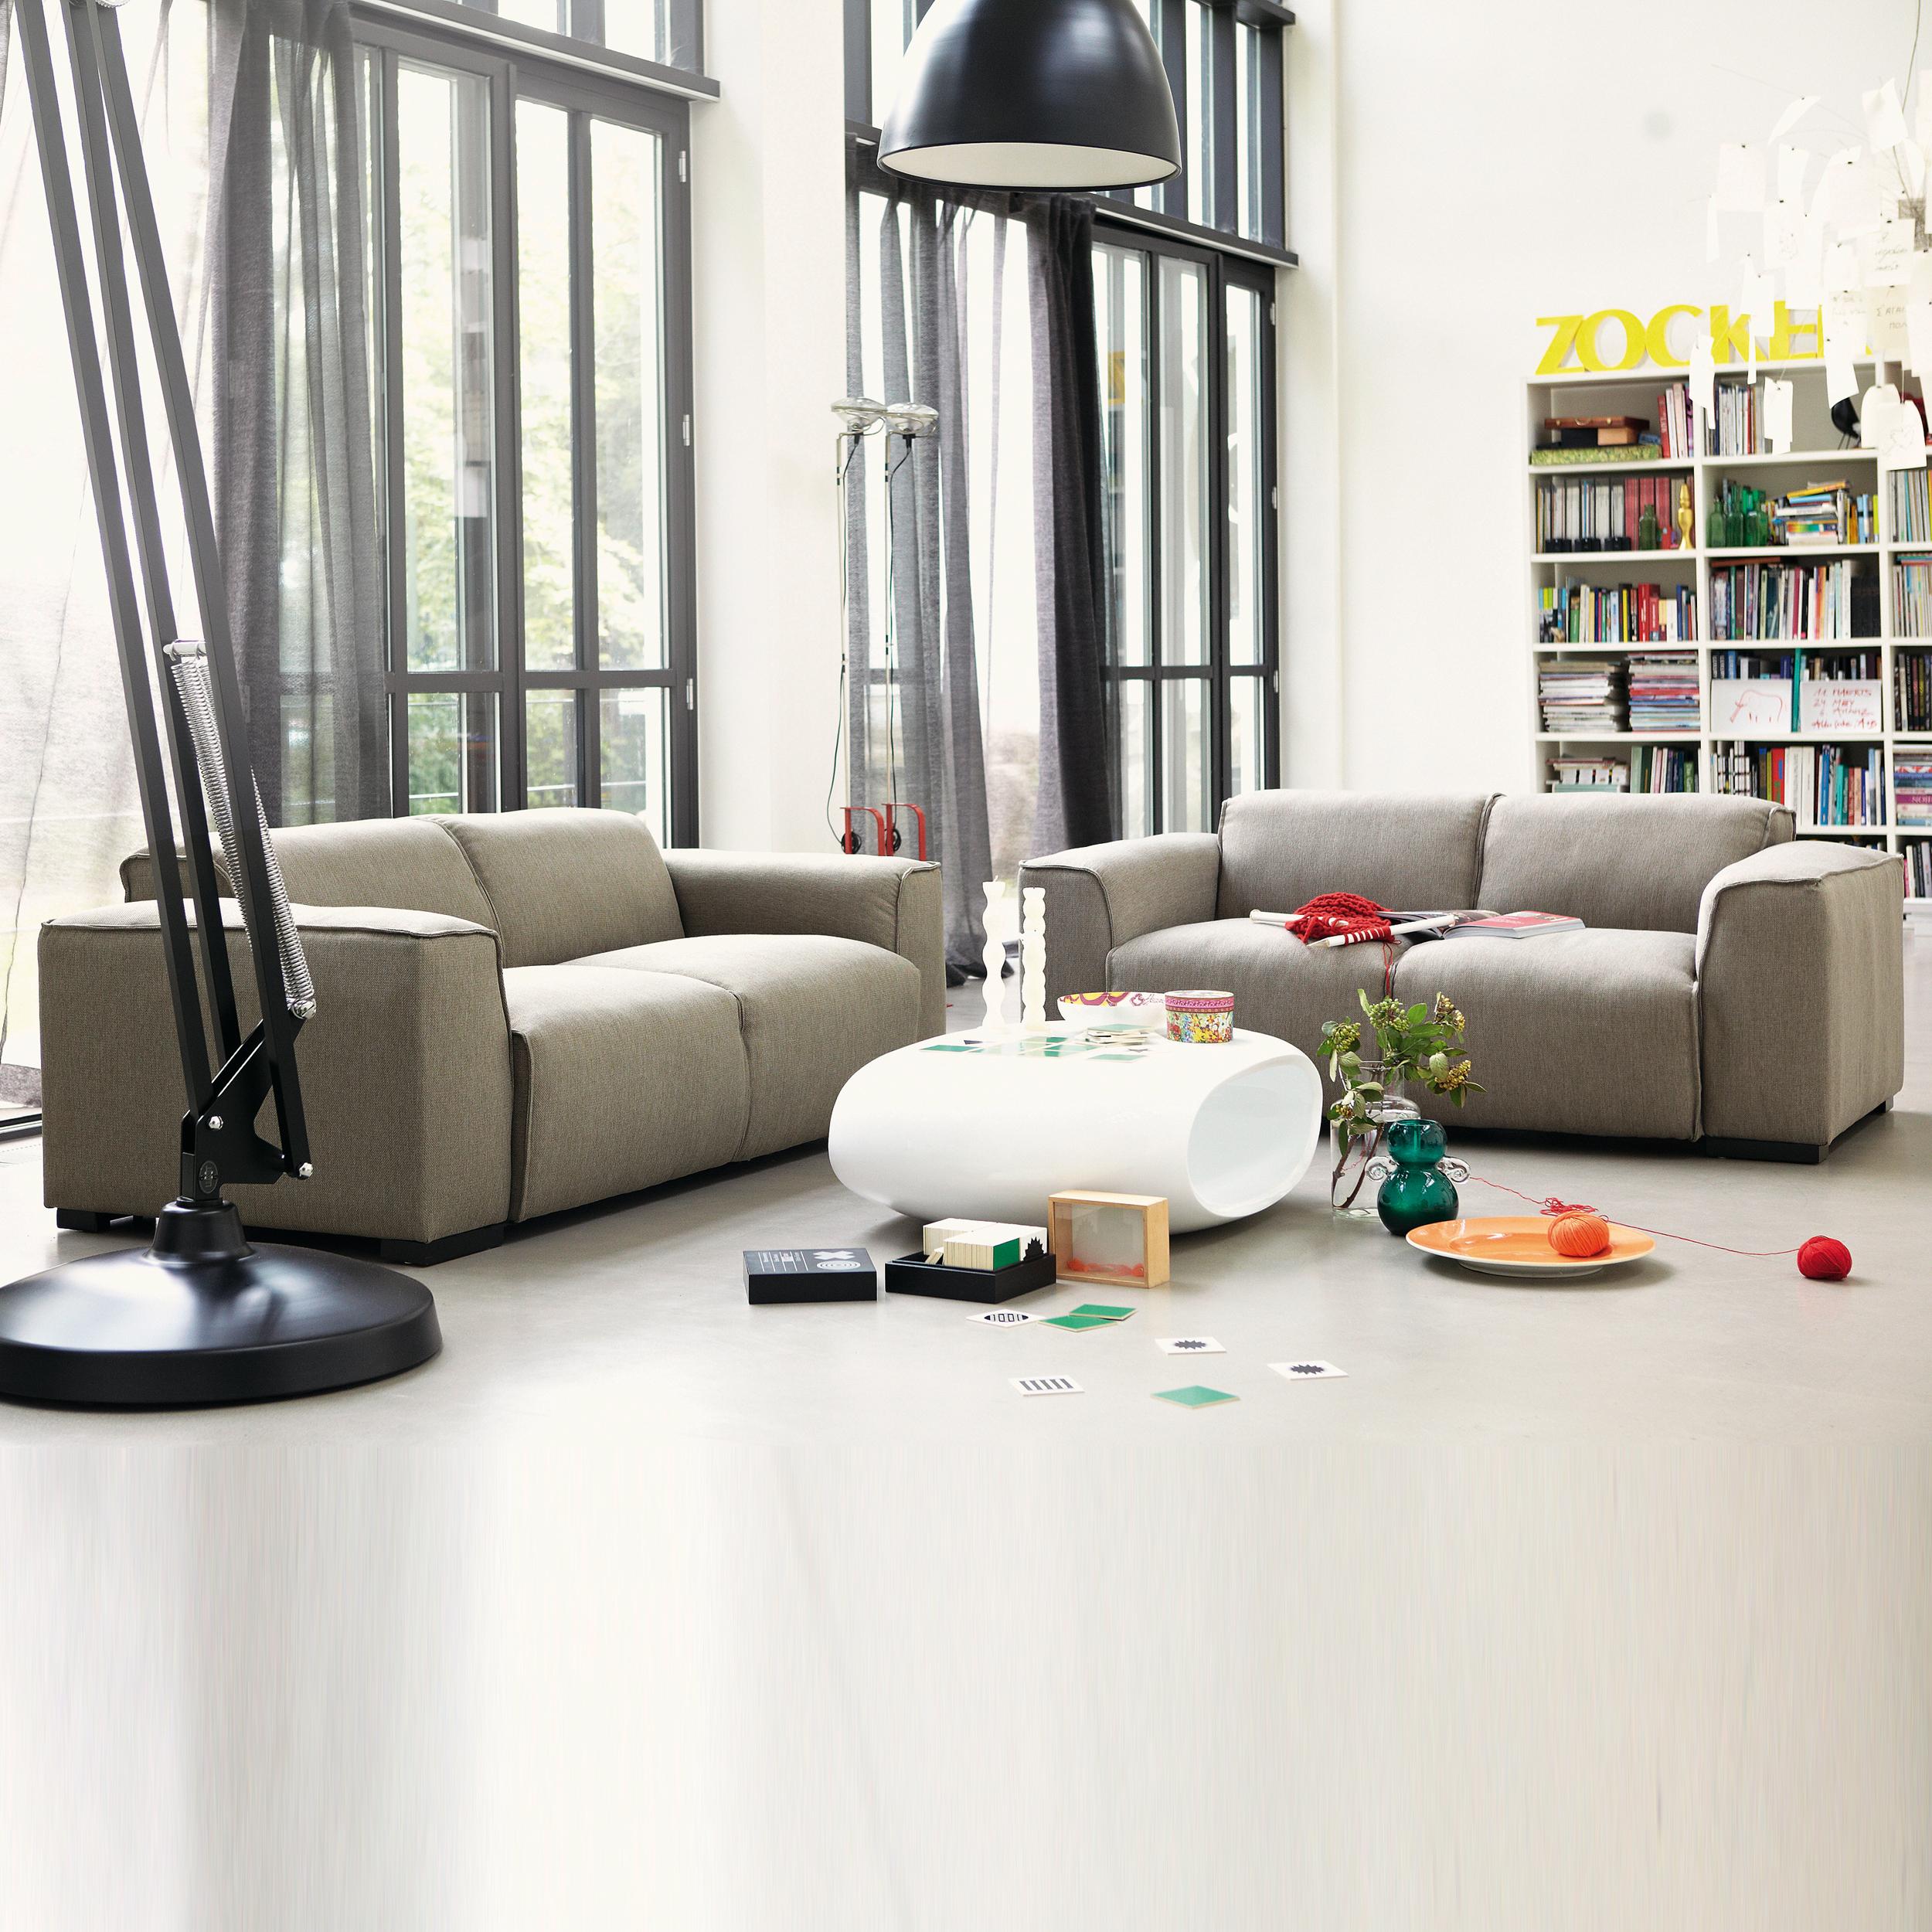 Großzügige Wohlfühlmöbel mit weichem Sitzkomfort bei ikarus #couchtisch #wohnzimmer #sofa #sofalandschaft #weißercouchtisch #relaxsofa ©ikarus...design